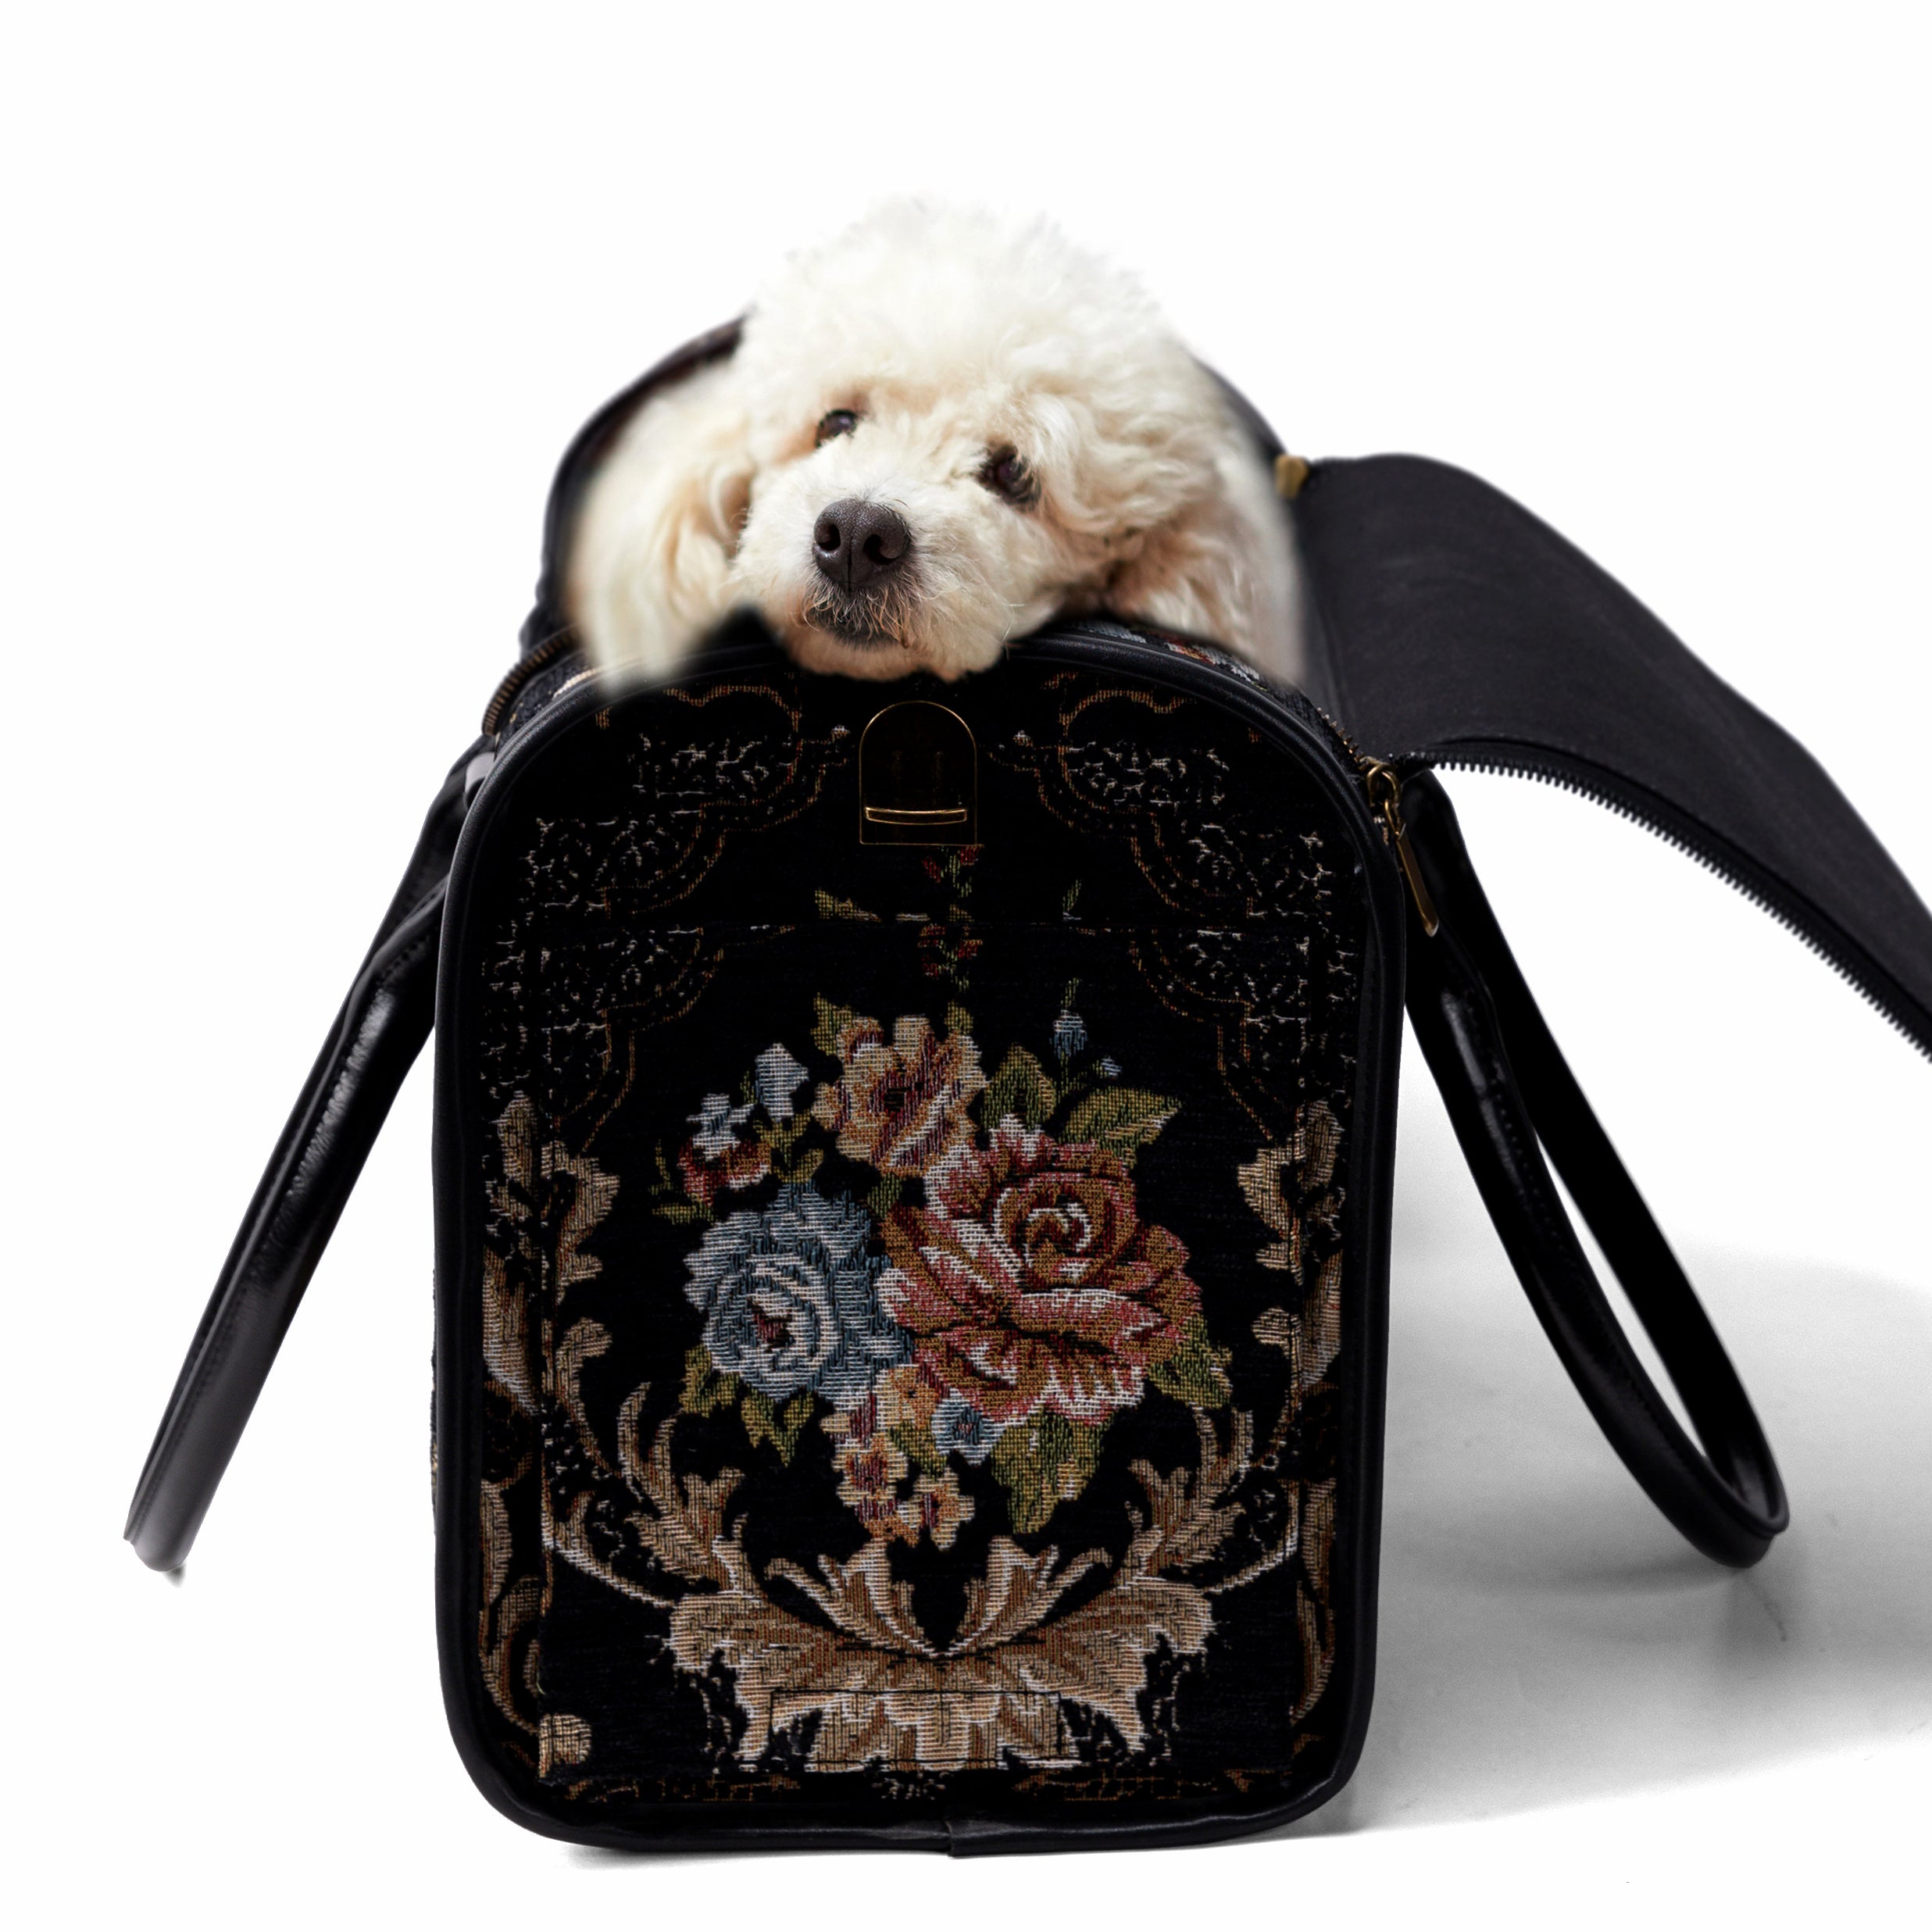 Travel Dog Carrier Bag Floral Black